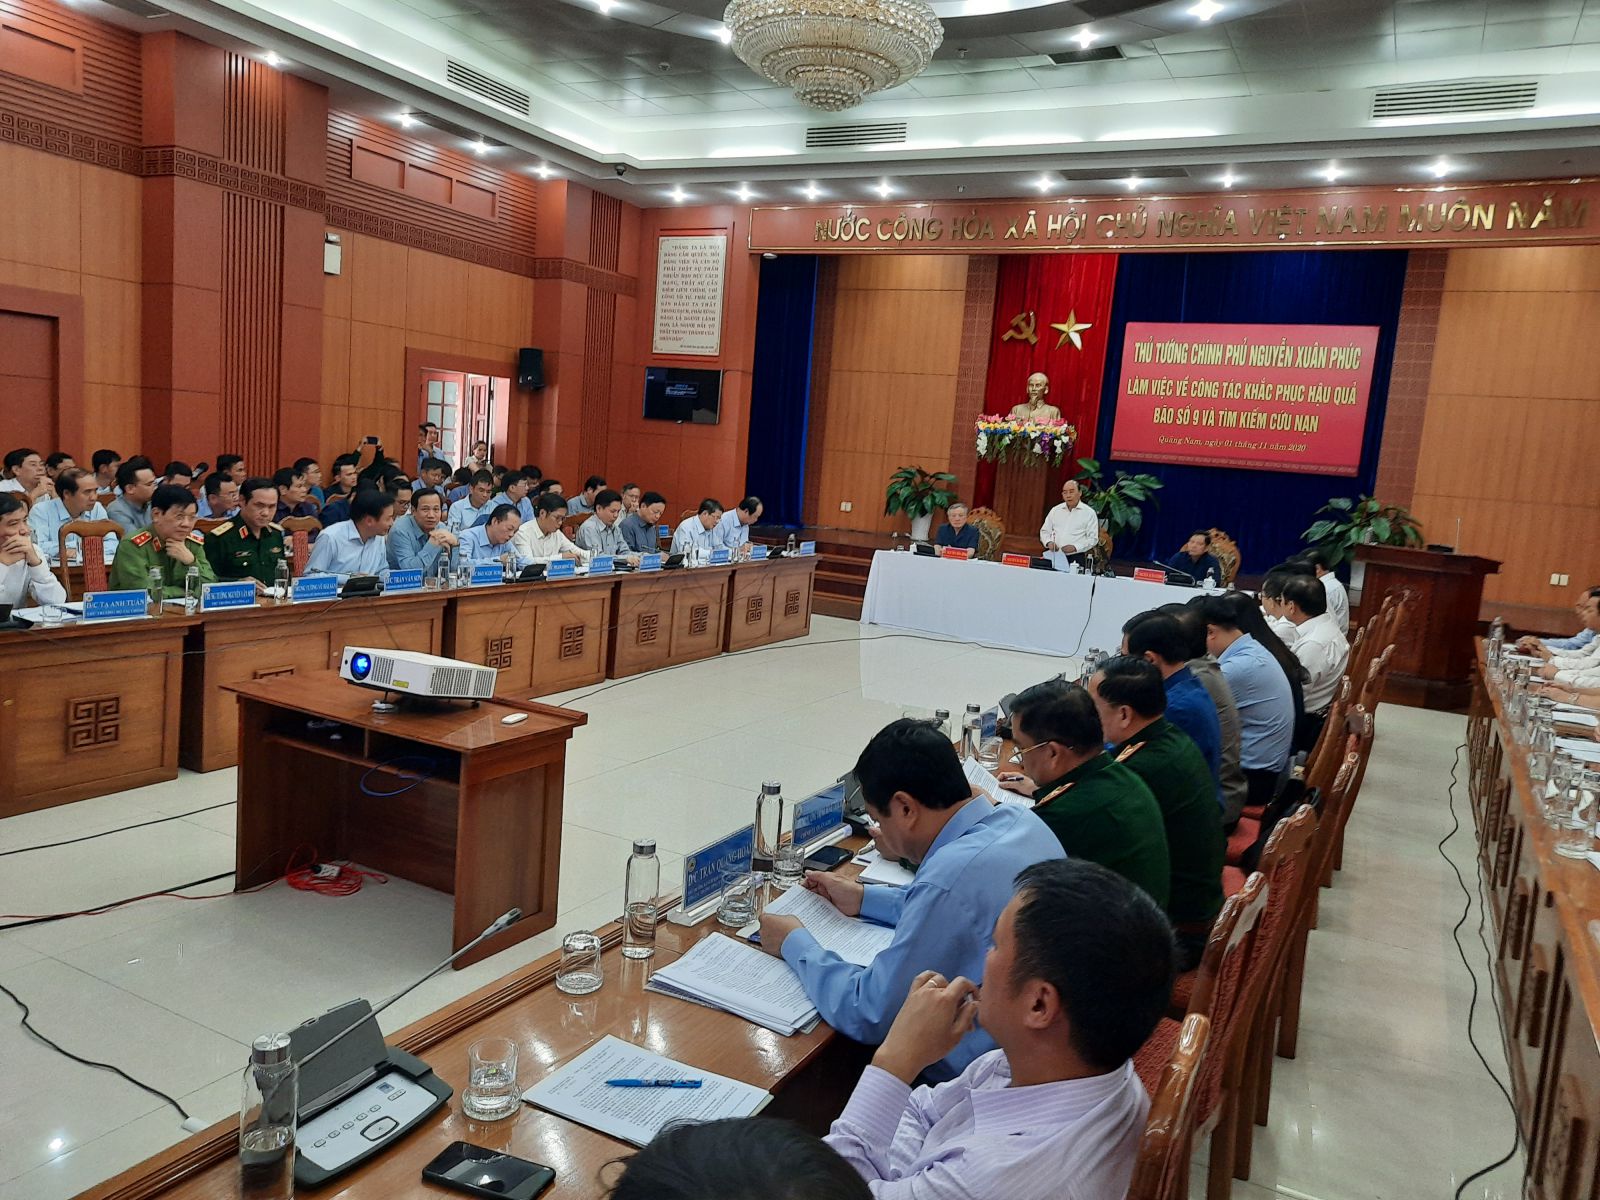 Làm việc với lãnh đạo 4 tỉnh miền Trung, Thủ tướng Chính phủ Nguyễn Xuân Phúc yêu cầu các bộ, ngành Trung ương, các địa phương phải cấp bách có giải pháp cụ thể để đời sống nhân dân nhanh chóng trở lại bình thường